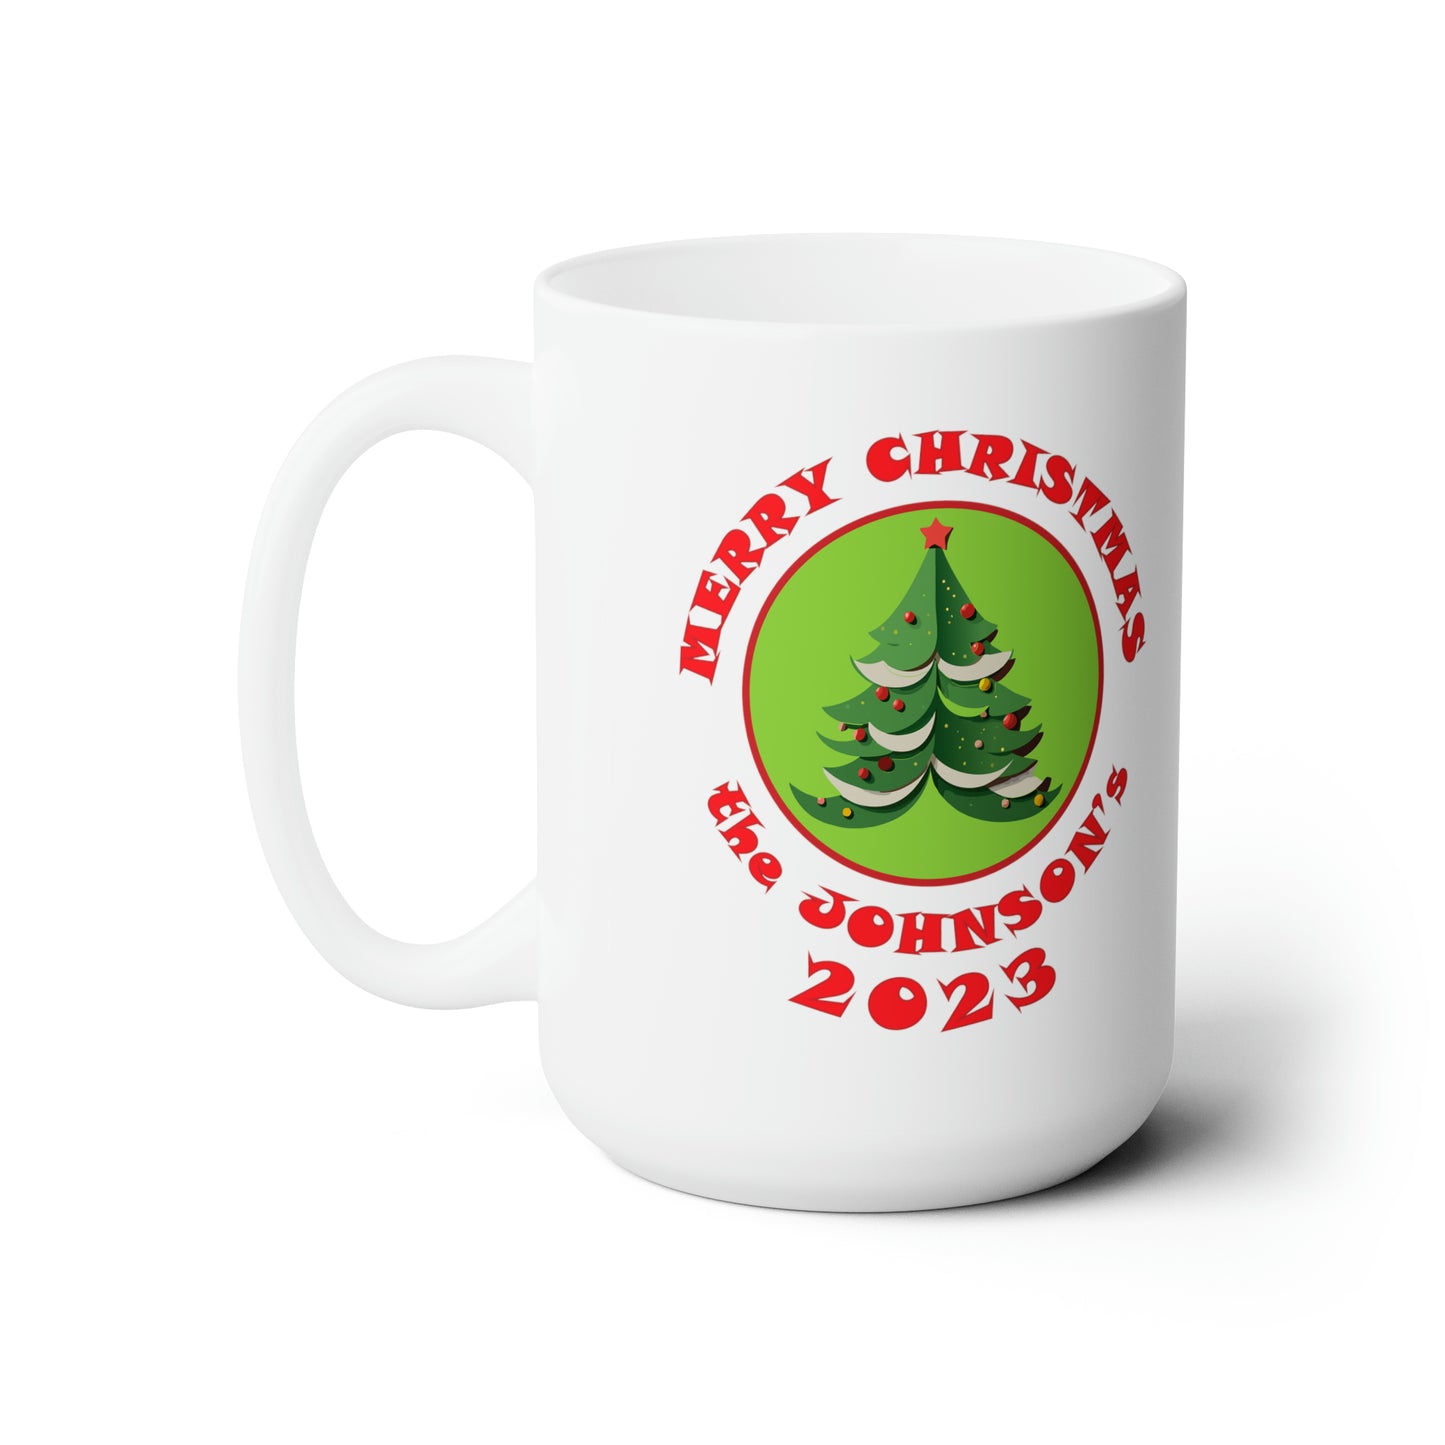 Custom Personalized Family Christmas Ceramic Mug 15oz